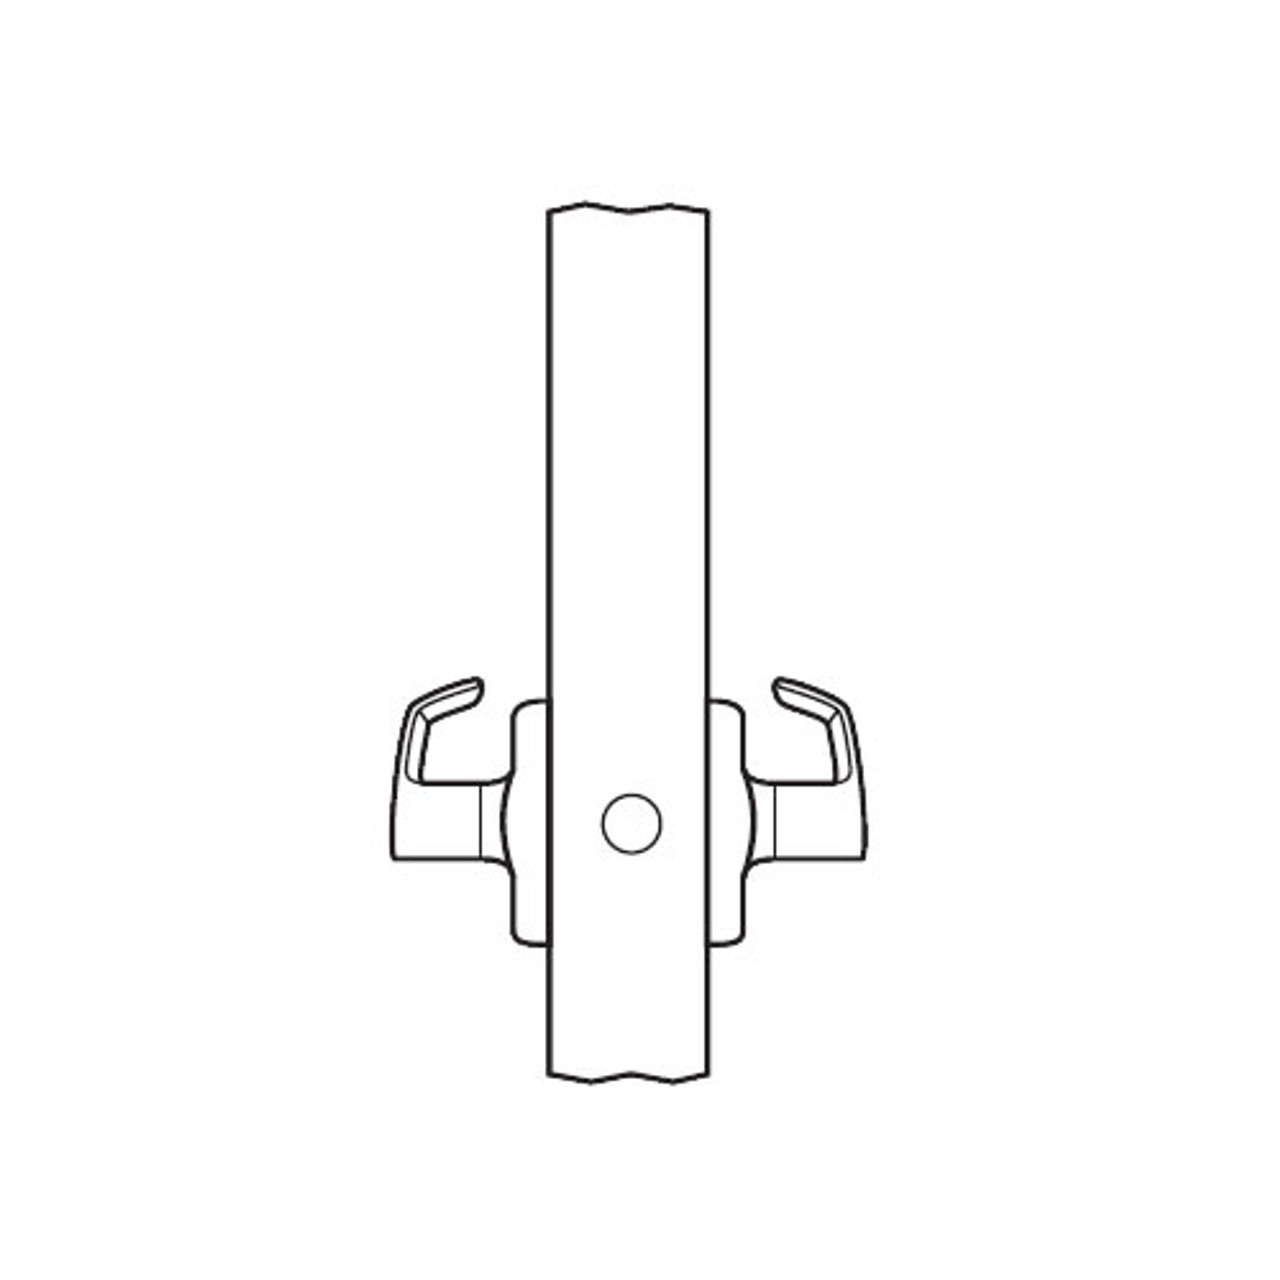 BM09-HSL-26D Arrow Mortise Lock BM Series Full Dummy Lever with Hastings Design in Satin Chrome